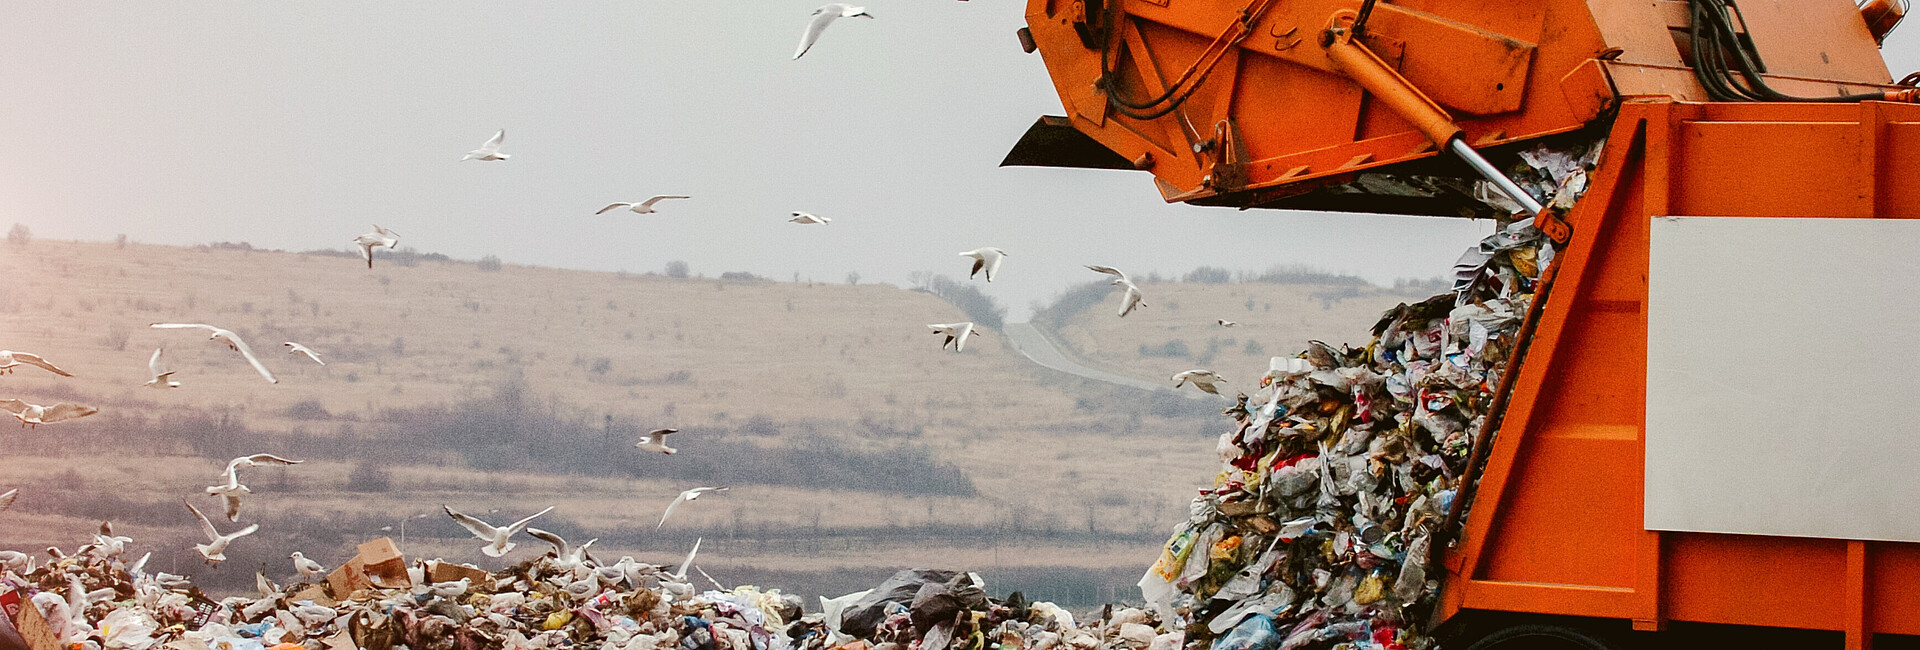 Müllwagen bringt Abfall zur Deponie